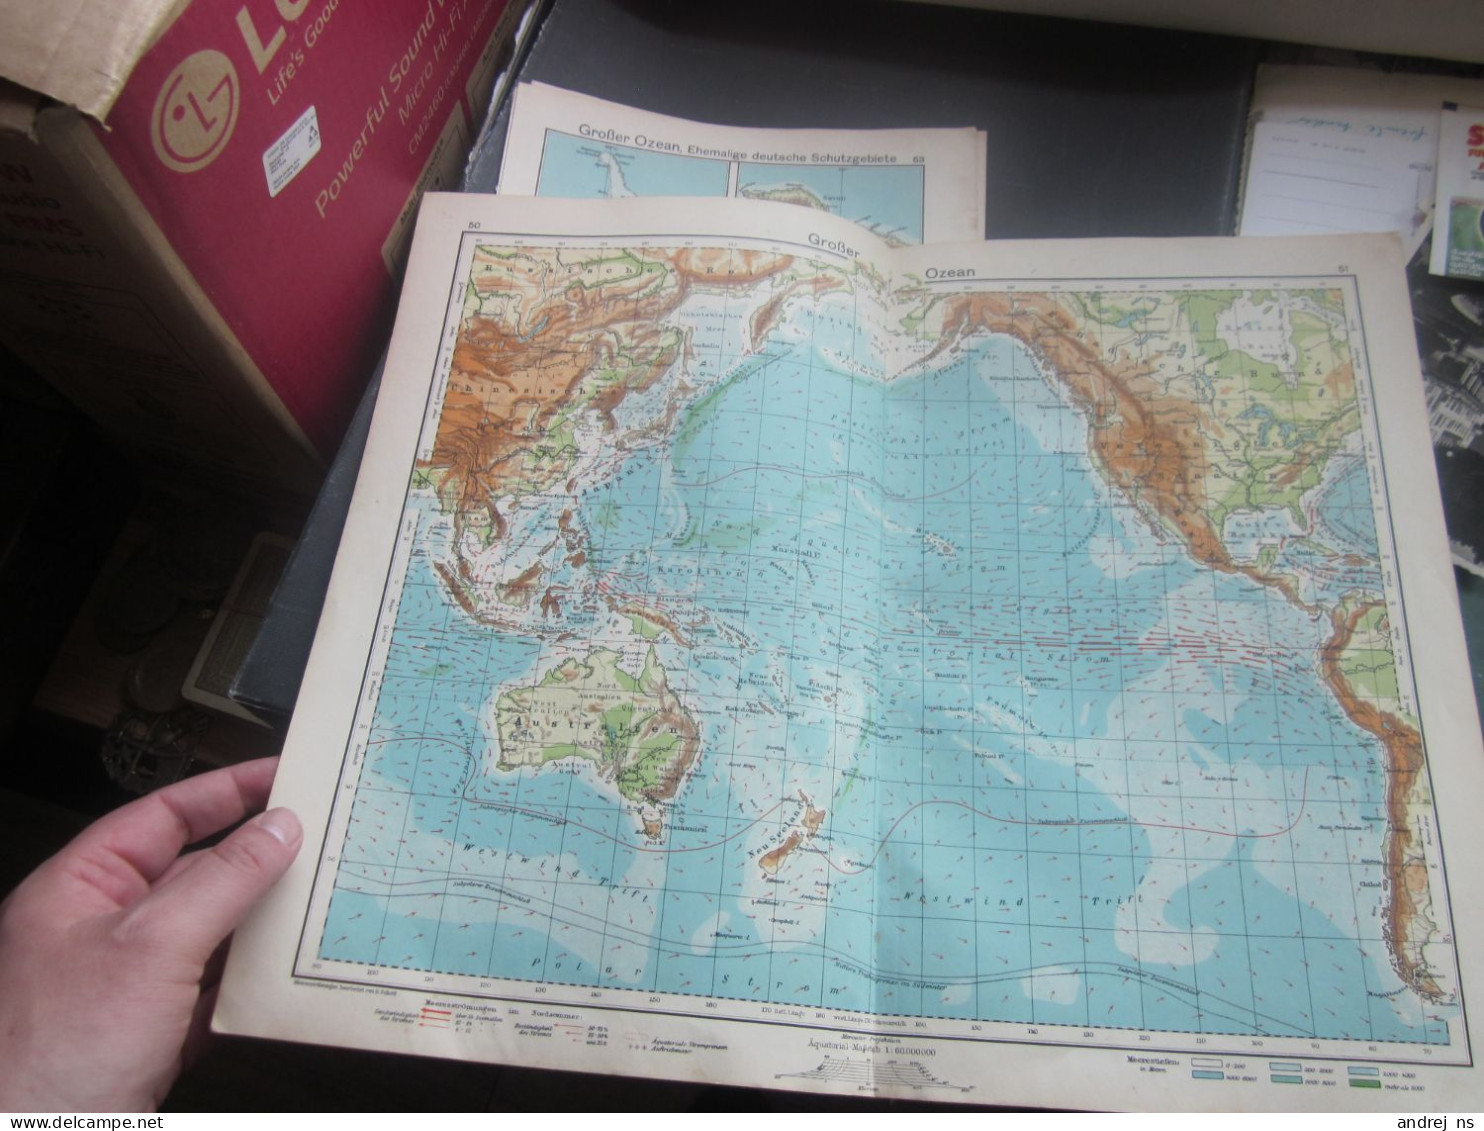 Old Map Grose Ozean 35.5x43.5 Cm - Seekarten